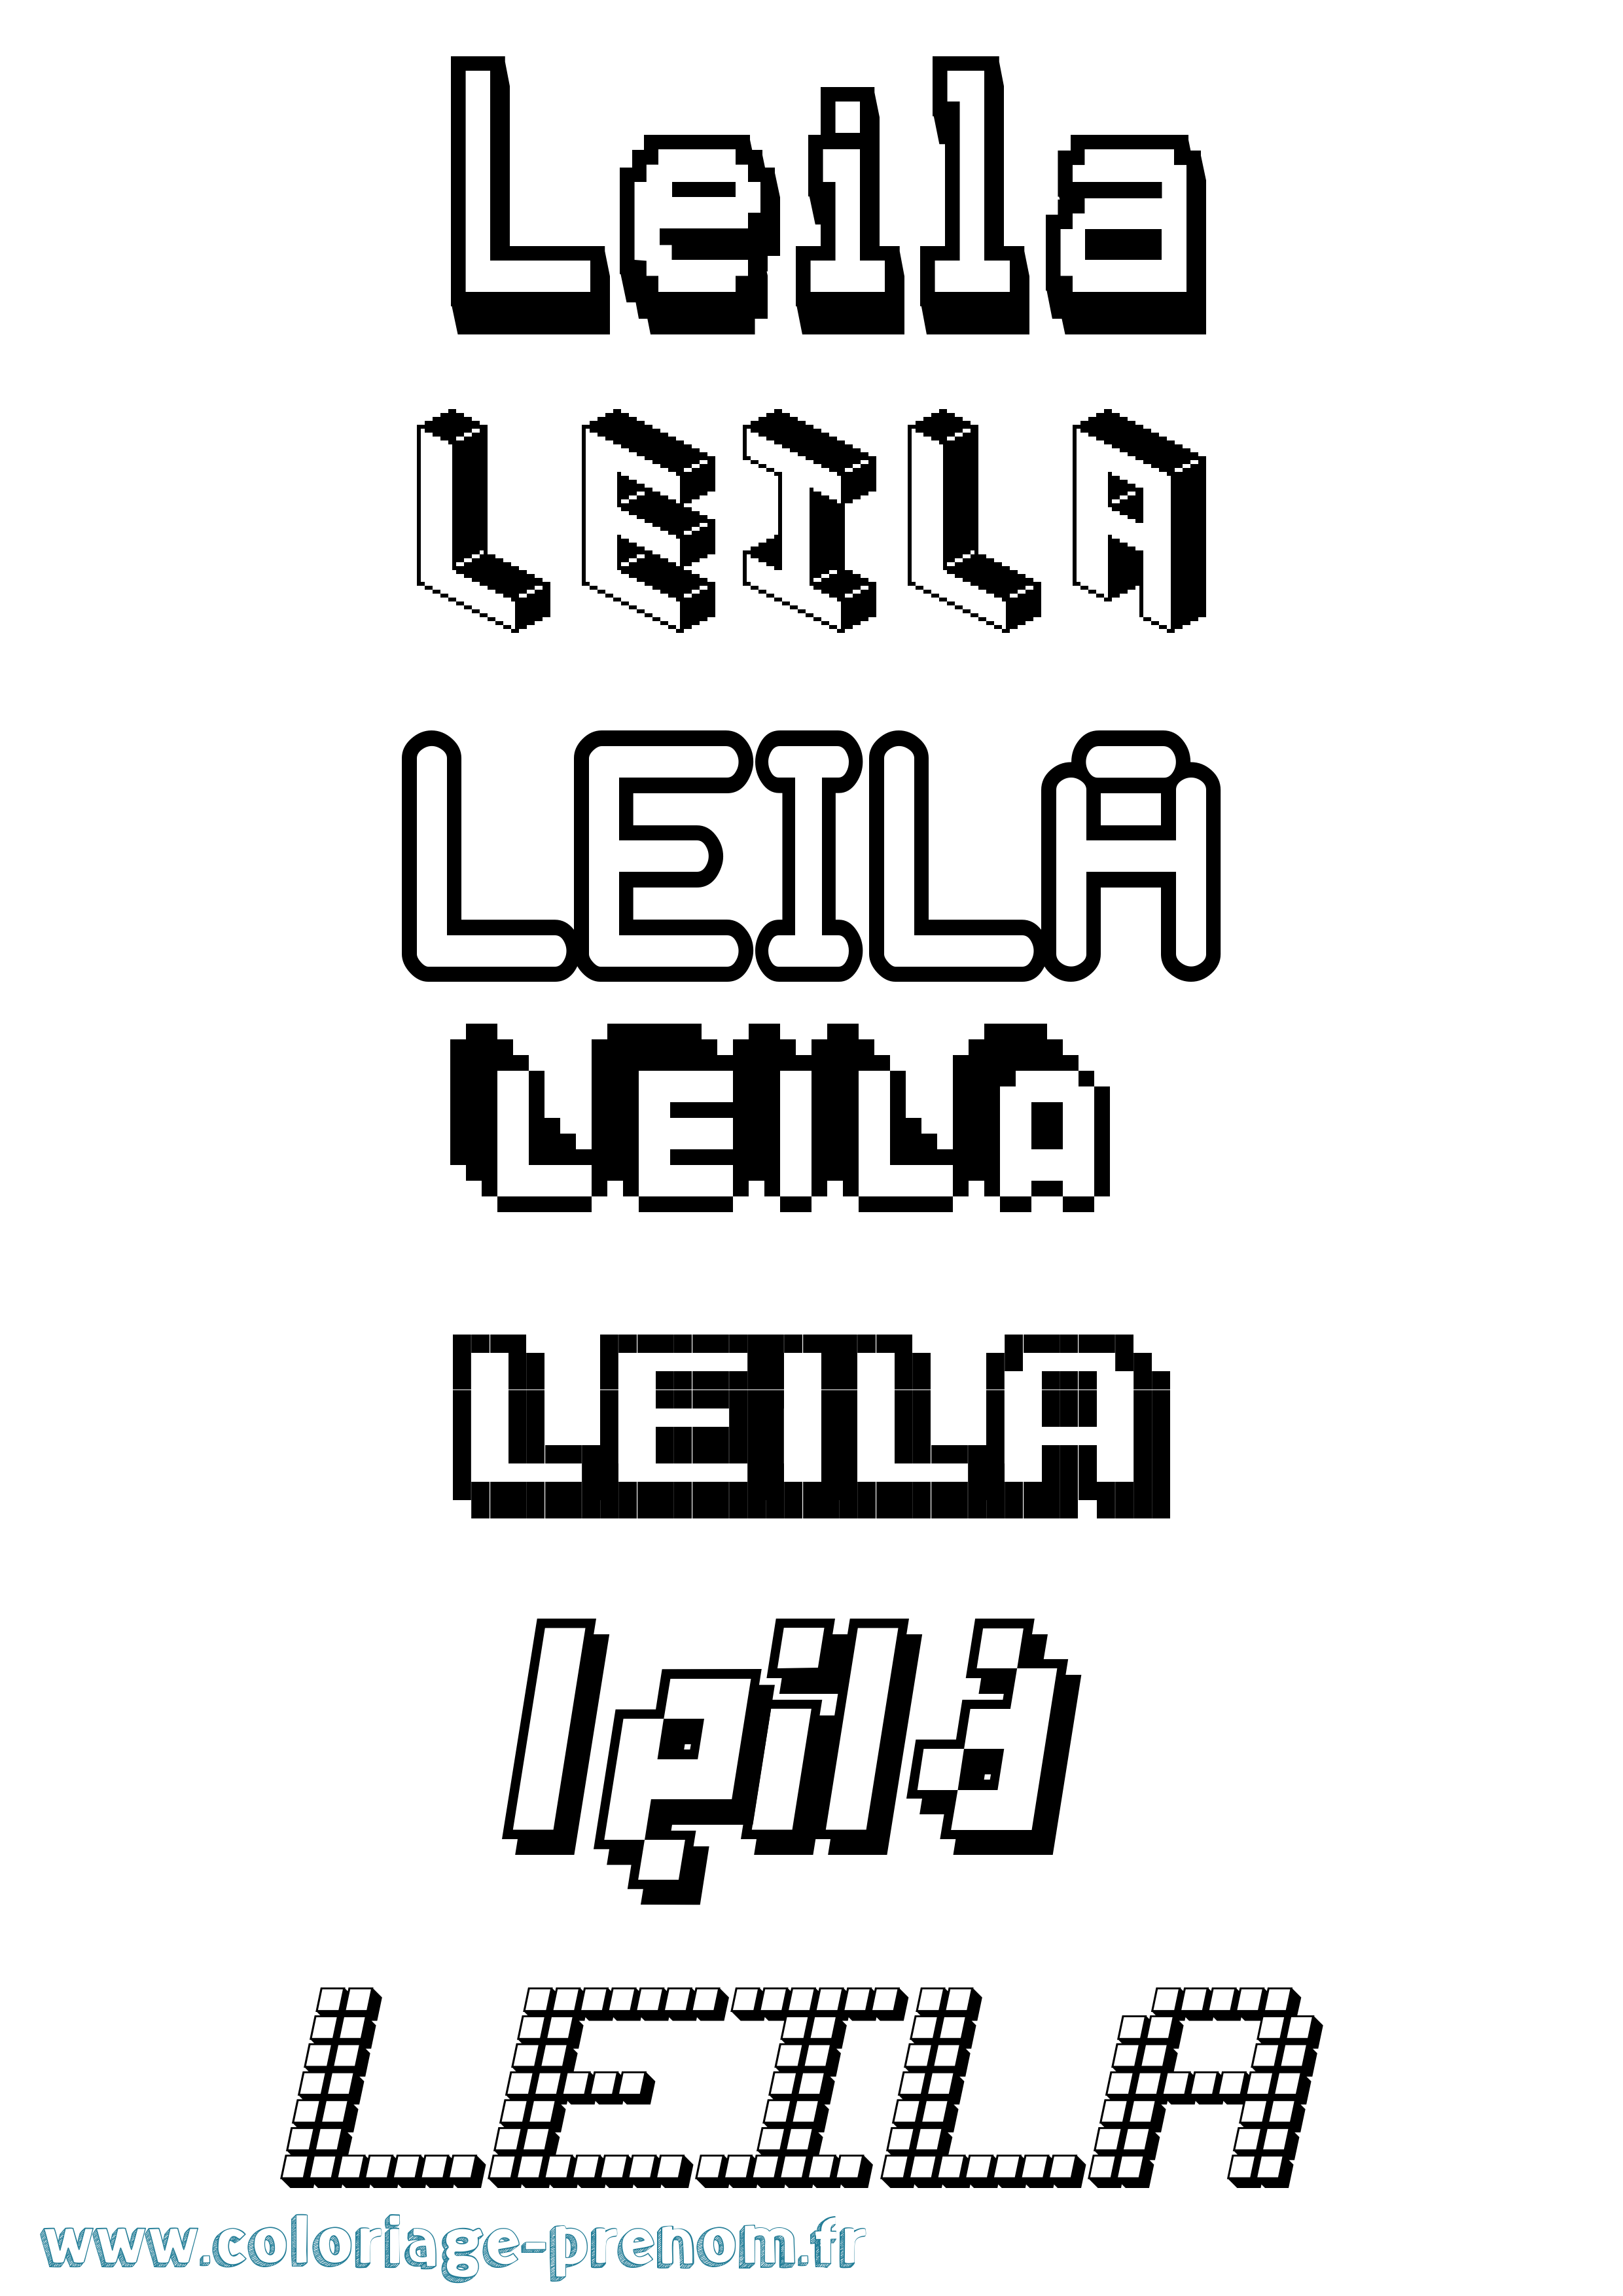 Coloriage prénom Leila